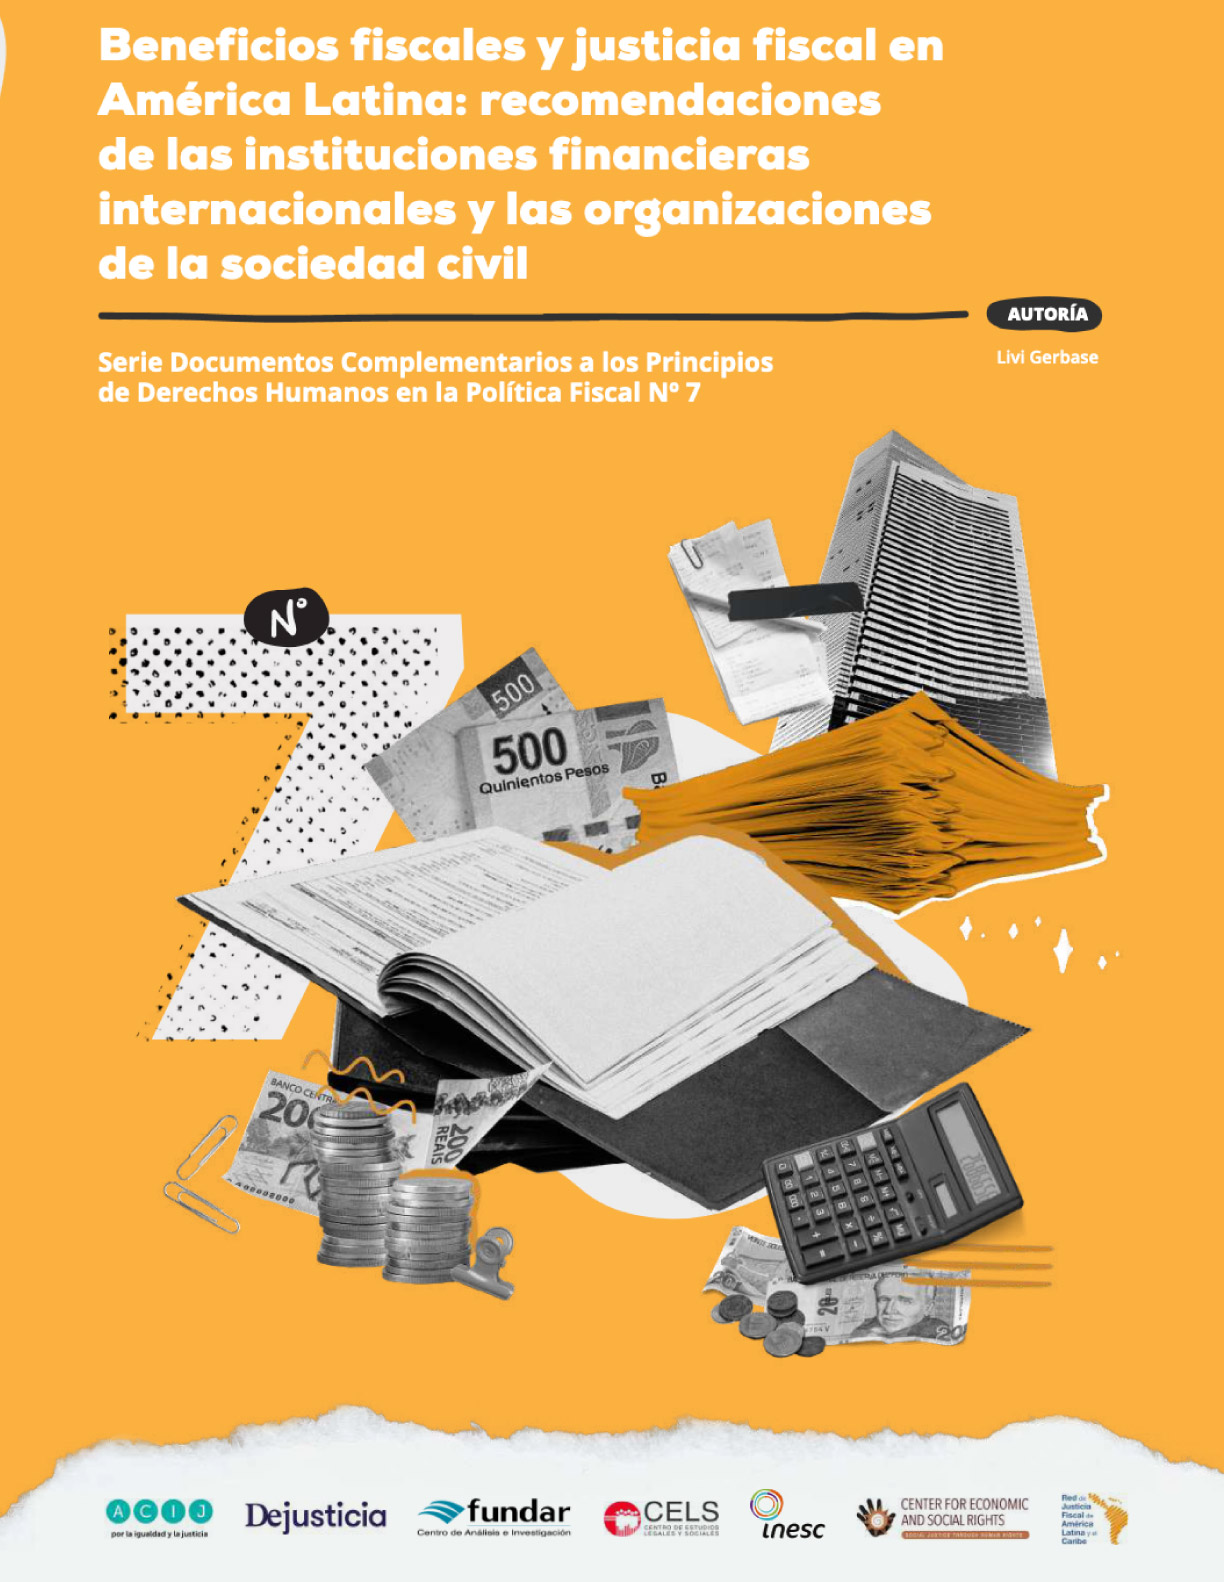 Beneficios fiscales y justicia fiscal en América Latina: recomendaciones de las instituciones financieras internacionales y las organizaciones de la sociedad civil